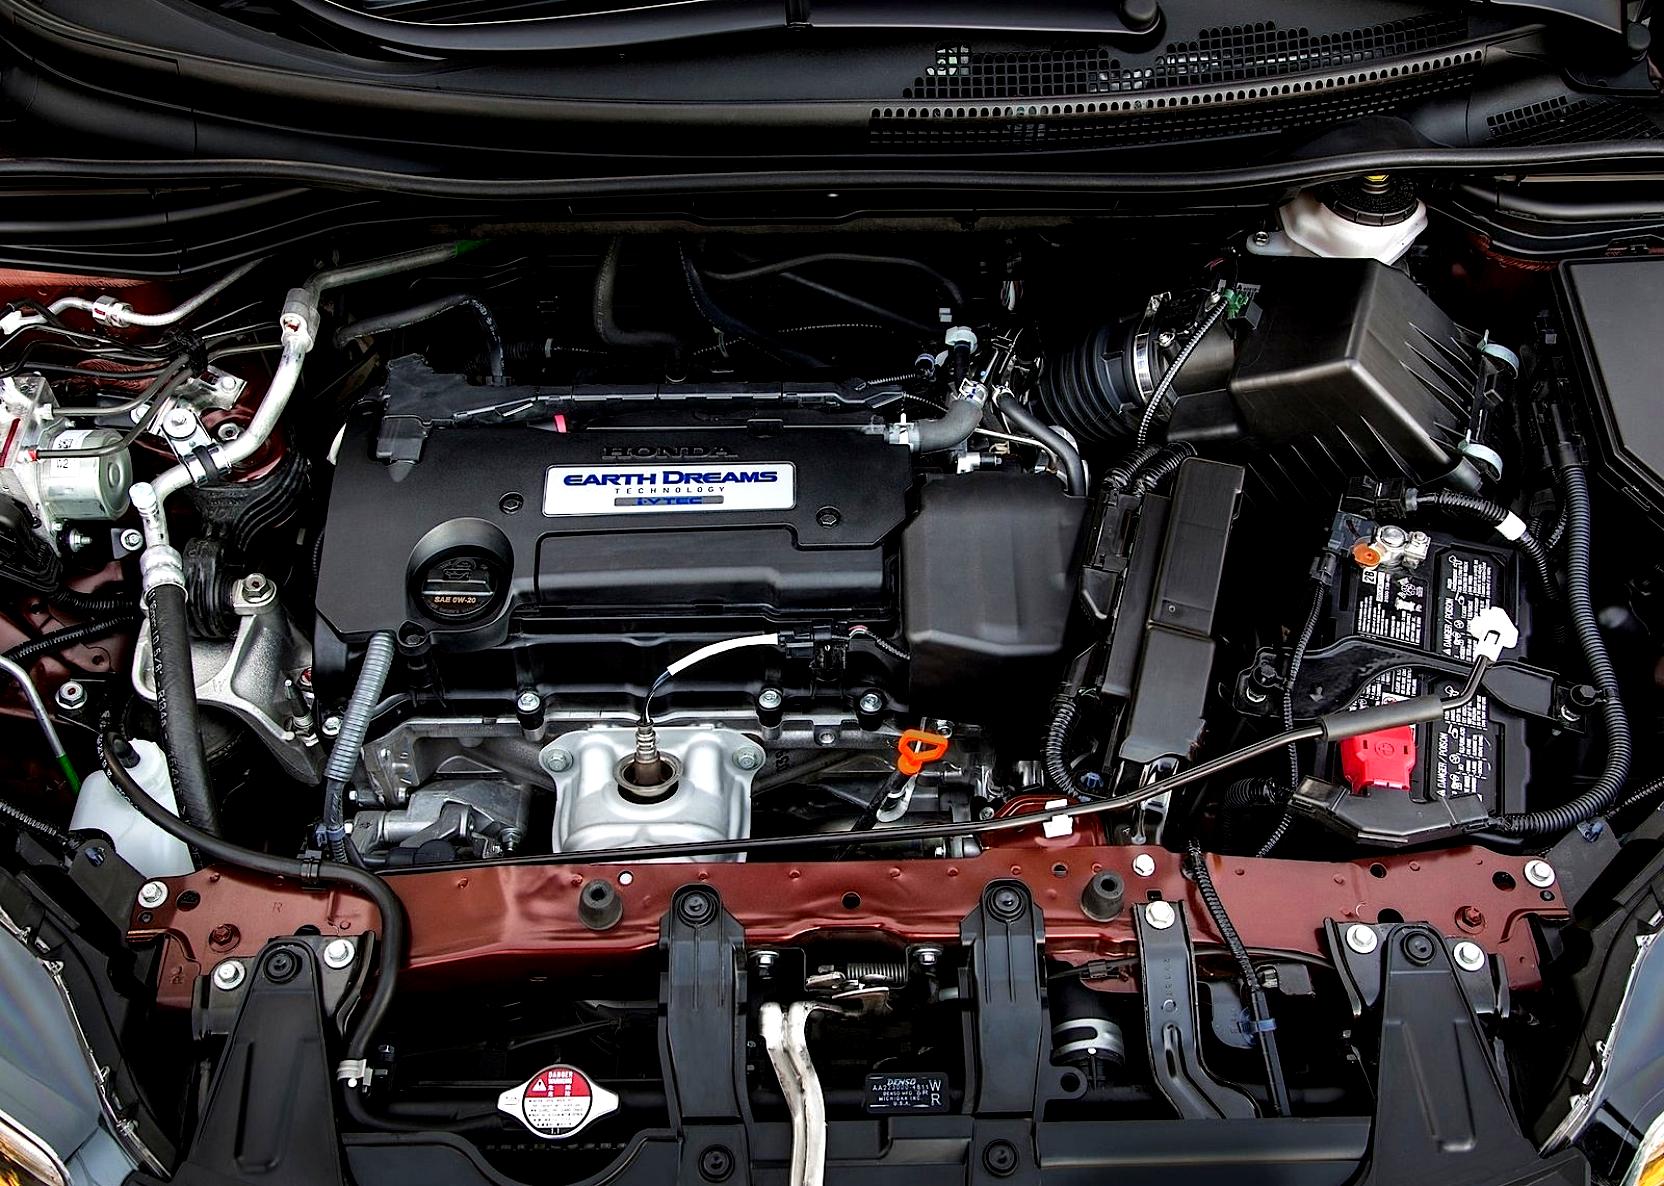 Honda CR-V 2014 #79